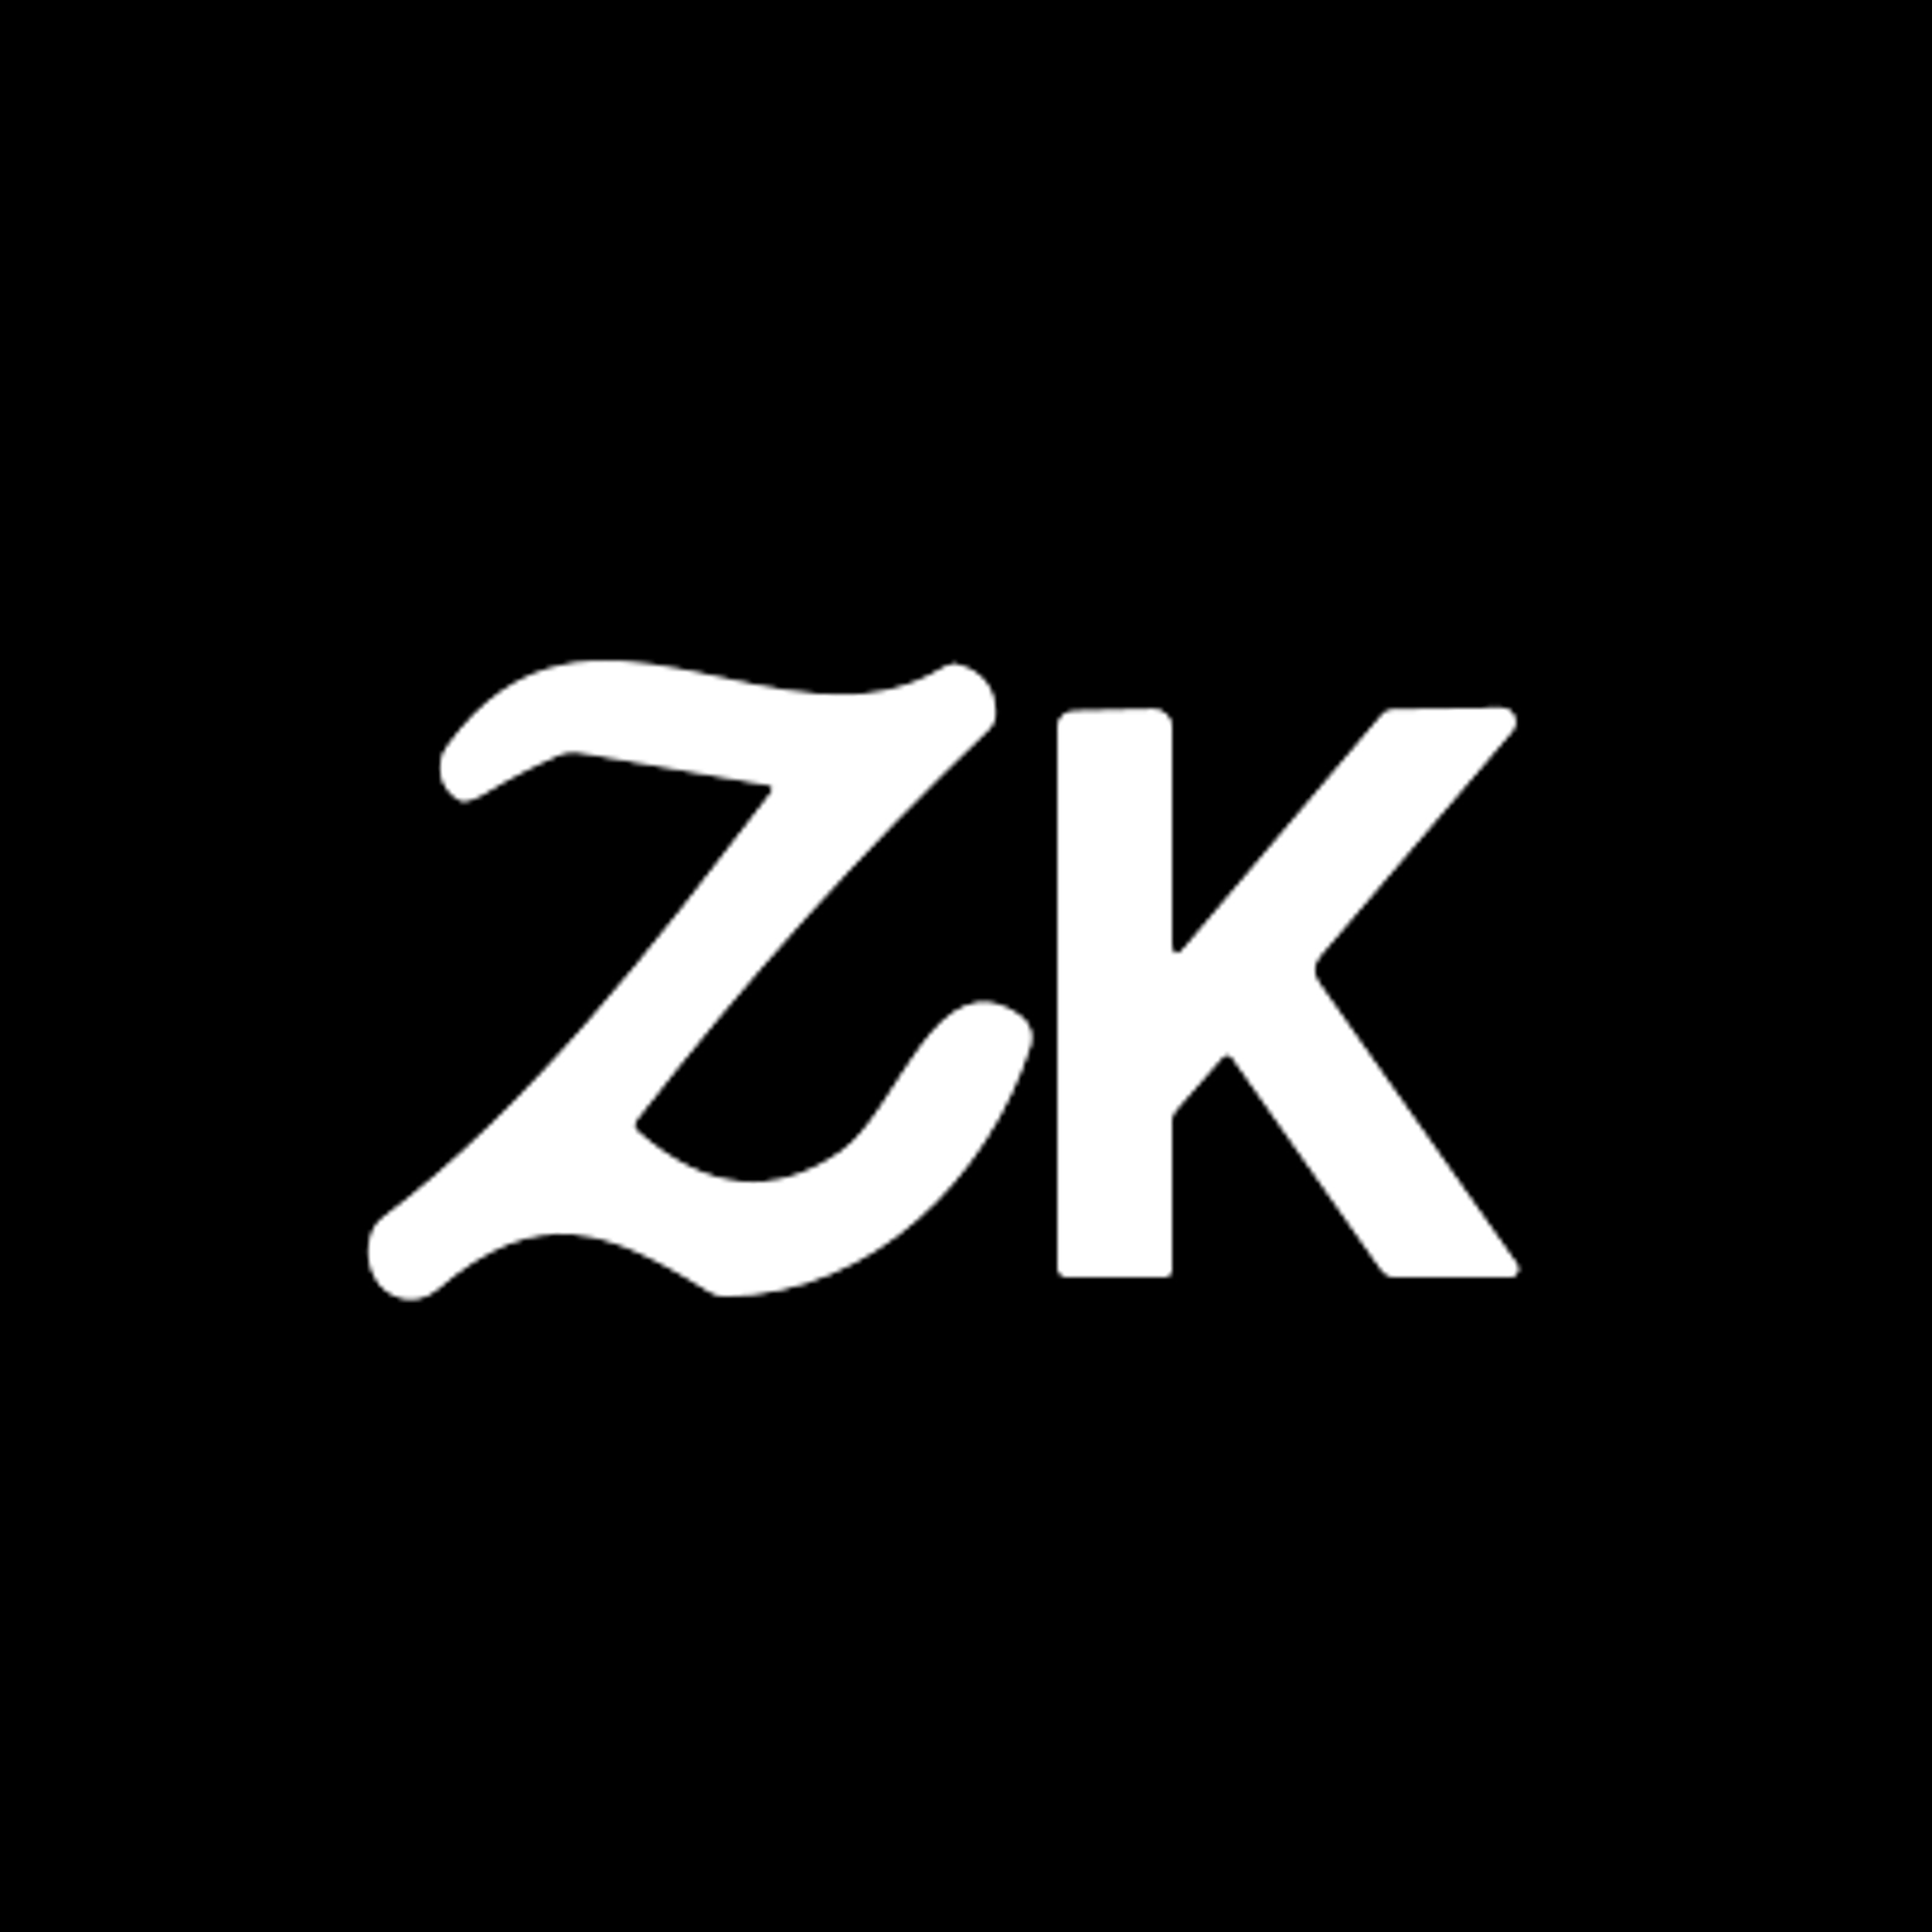 ZK Whiteboard